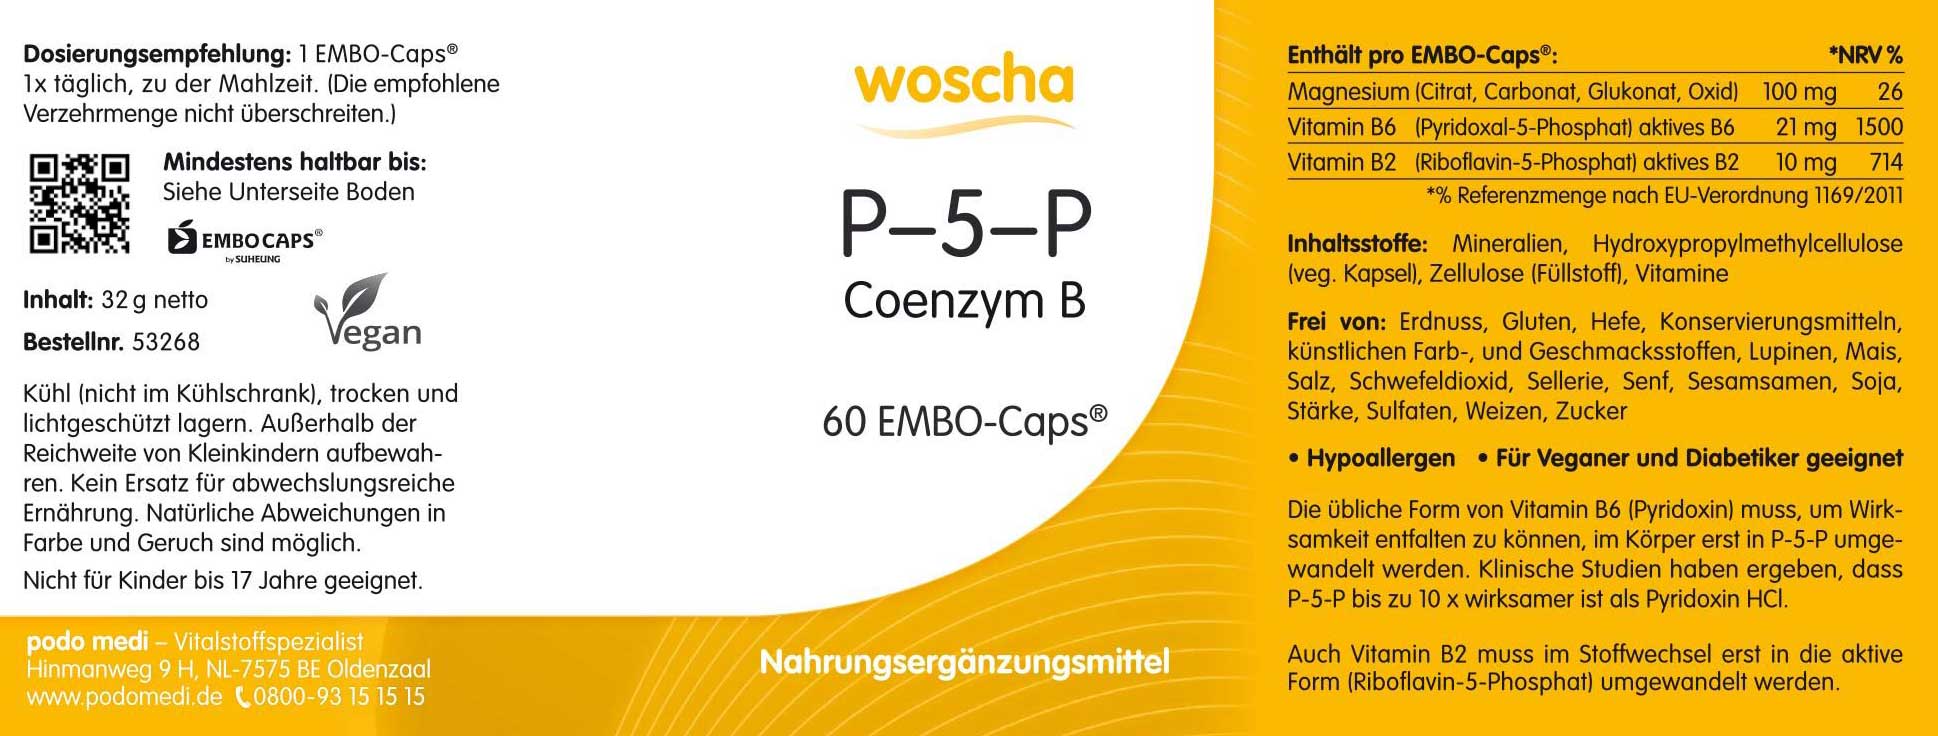 Woscha P-5-P Coenzym B6 von podo medi beinhaltet 60 Kapseln Etikett